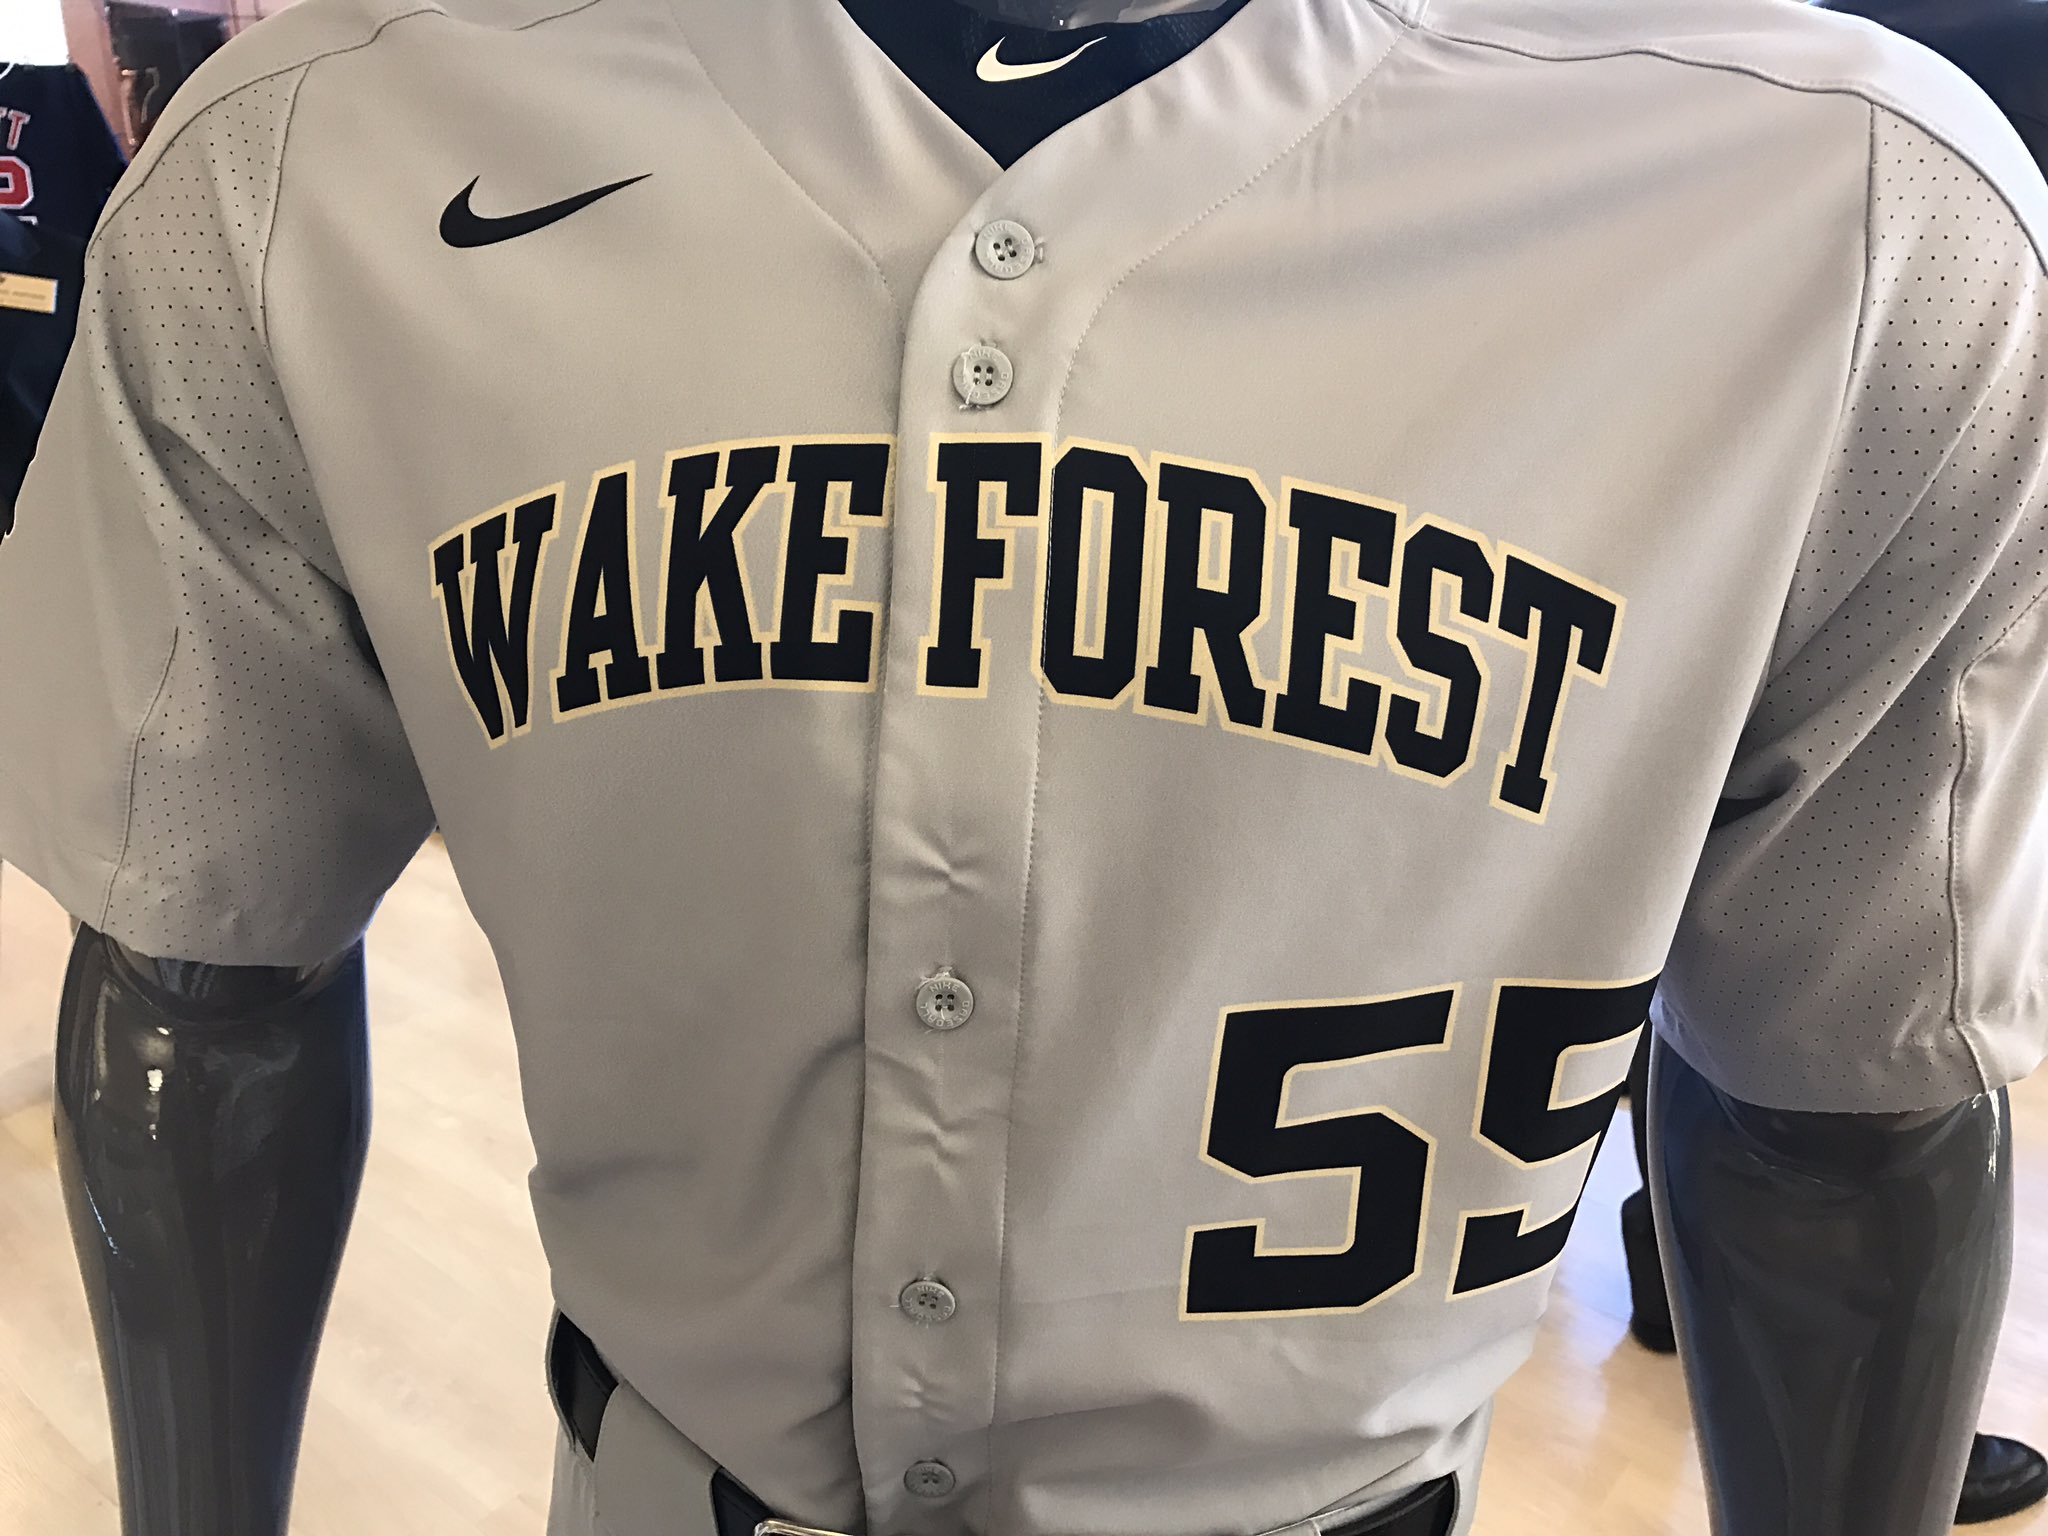 New Wake Forest Baseball Uniform — UNISWAG